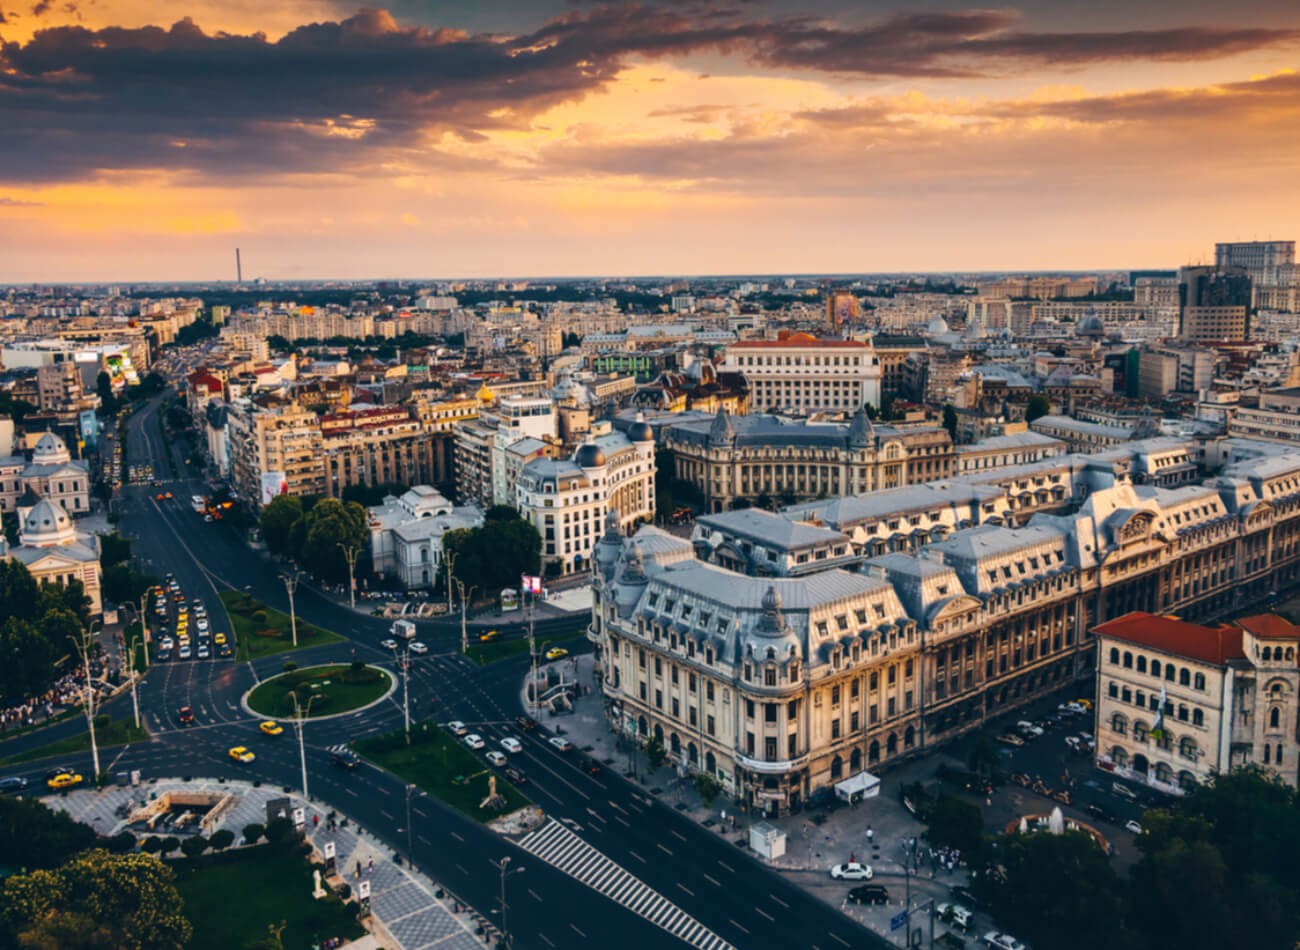 ROMANYA-BÜKREŞ / Kaleleri, meydanları, parlamento ile opera binası burada gezilebilecek birkaç yer sadece. Romanya’nın başkenti olan bu şehir, sanat, mimari, ticaret ve medya sektörünün buluştuğu, Orta Avrupa’nın en güzel şehirlerinden biri.